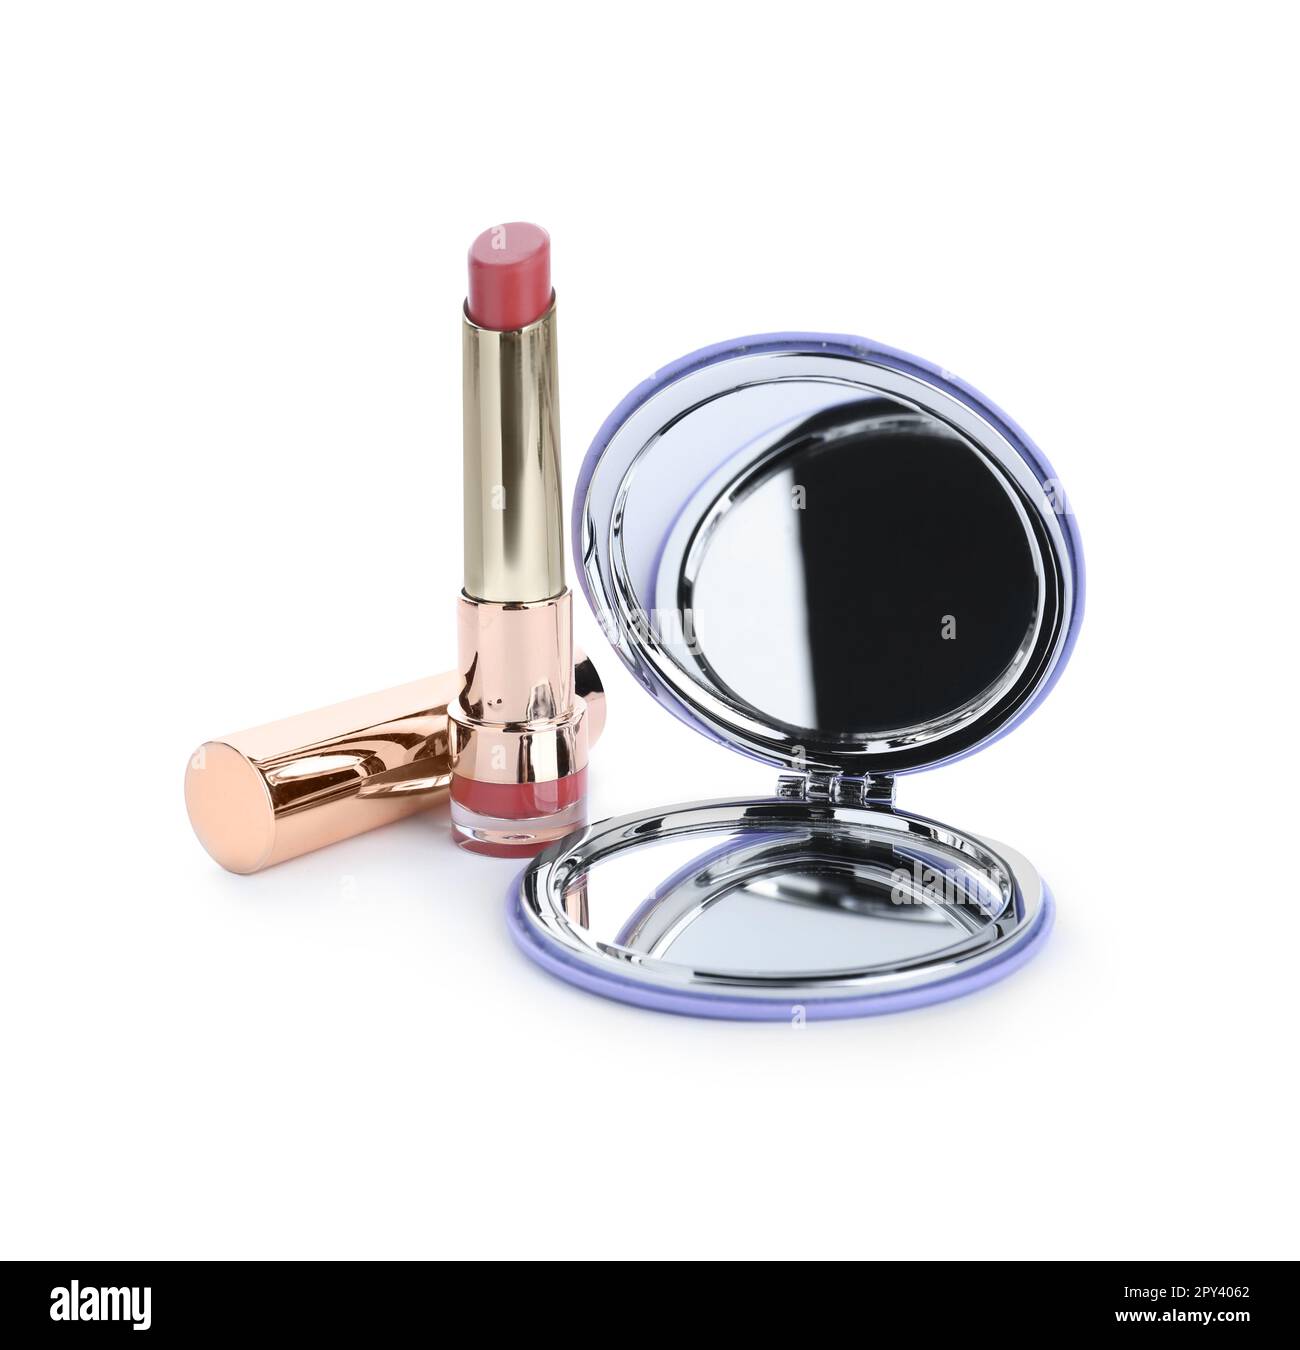 Elegante specchio cosmetico tascabile e rossetto su sfondo bianco Foto  stock - Alamy